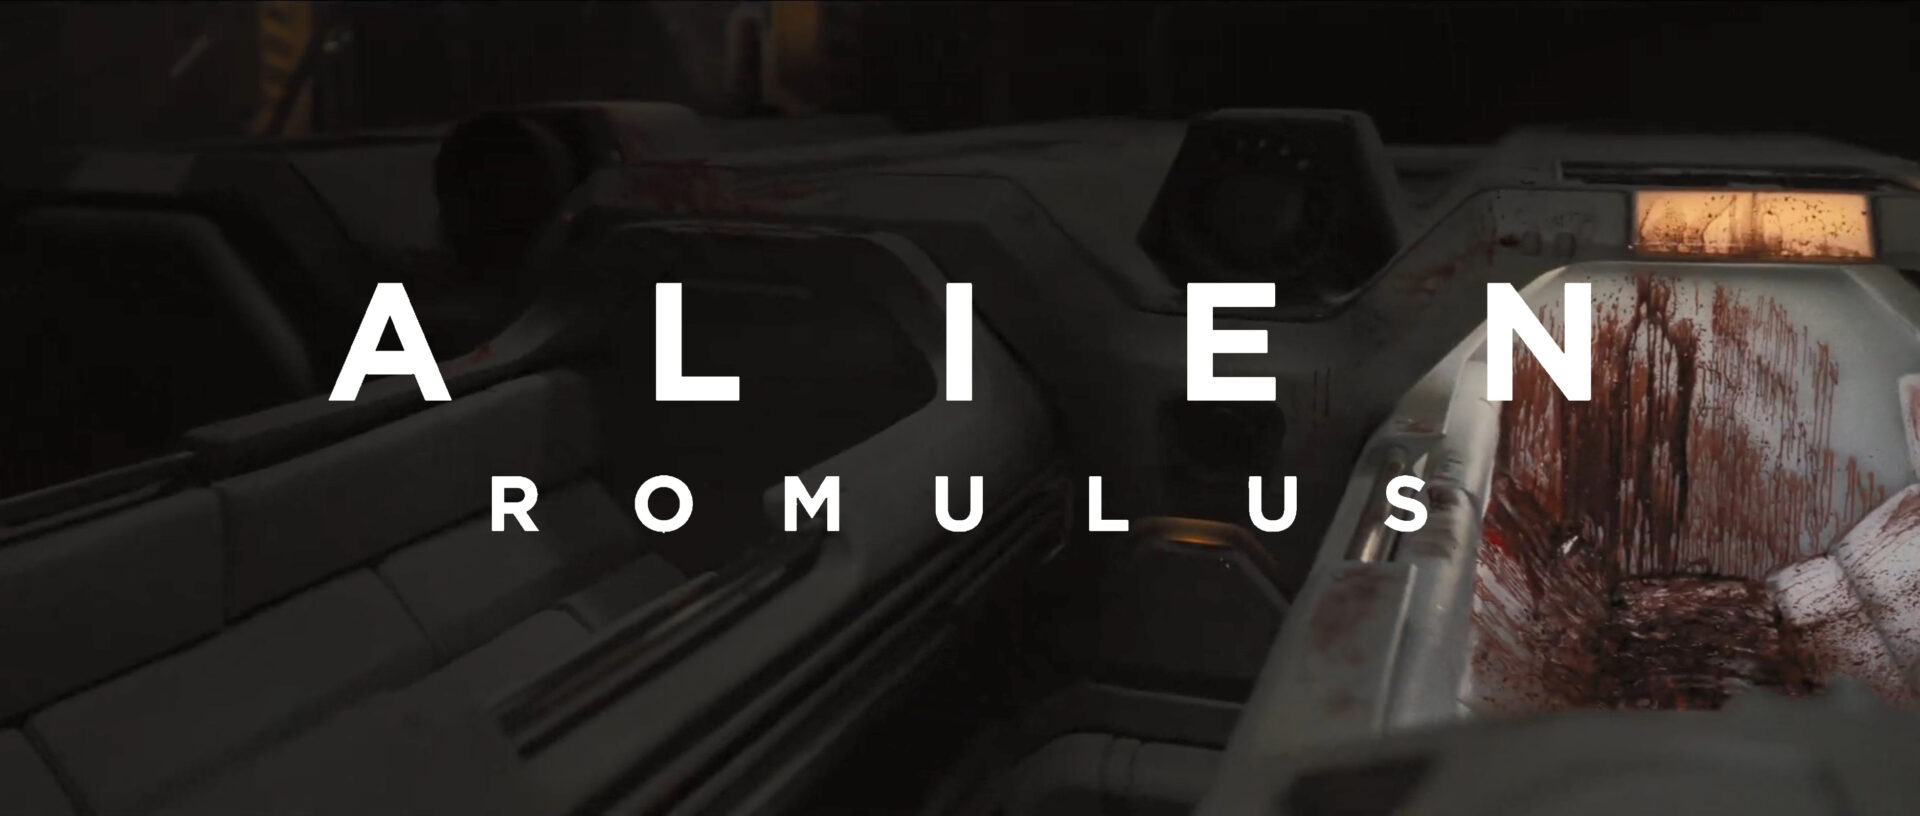 alien romulus teaser trailer banner